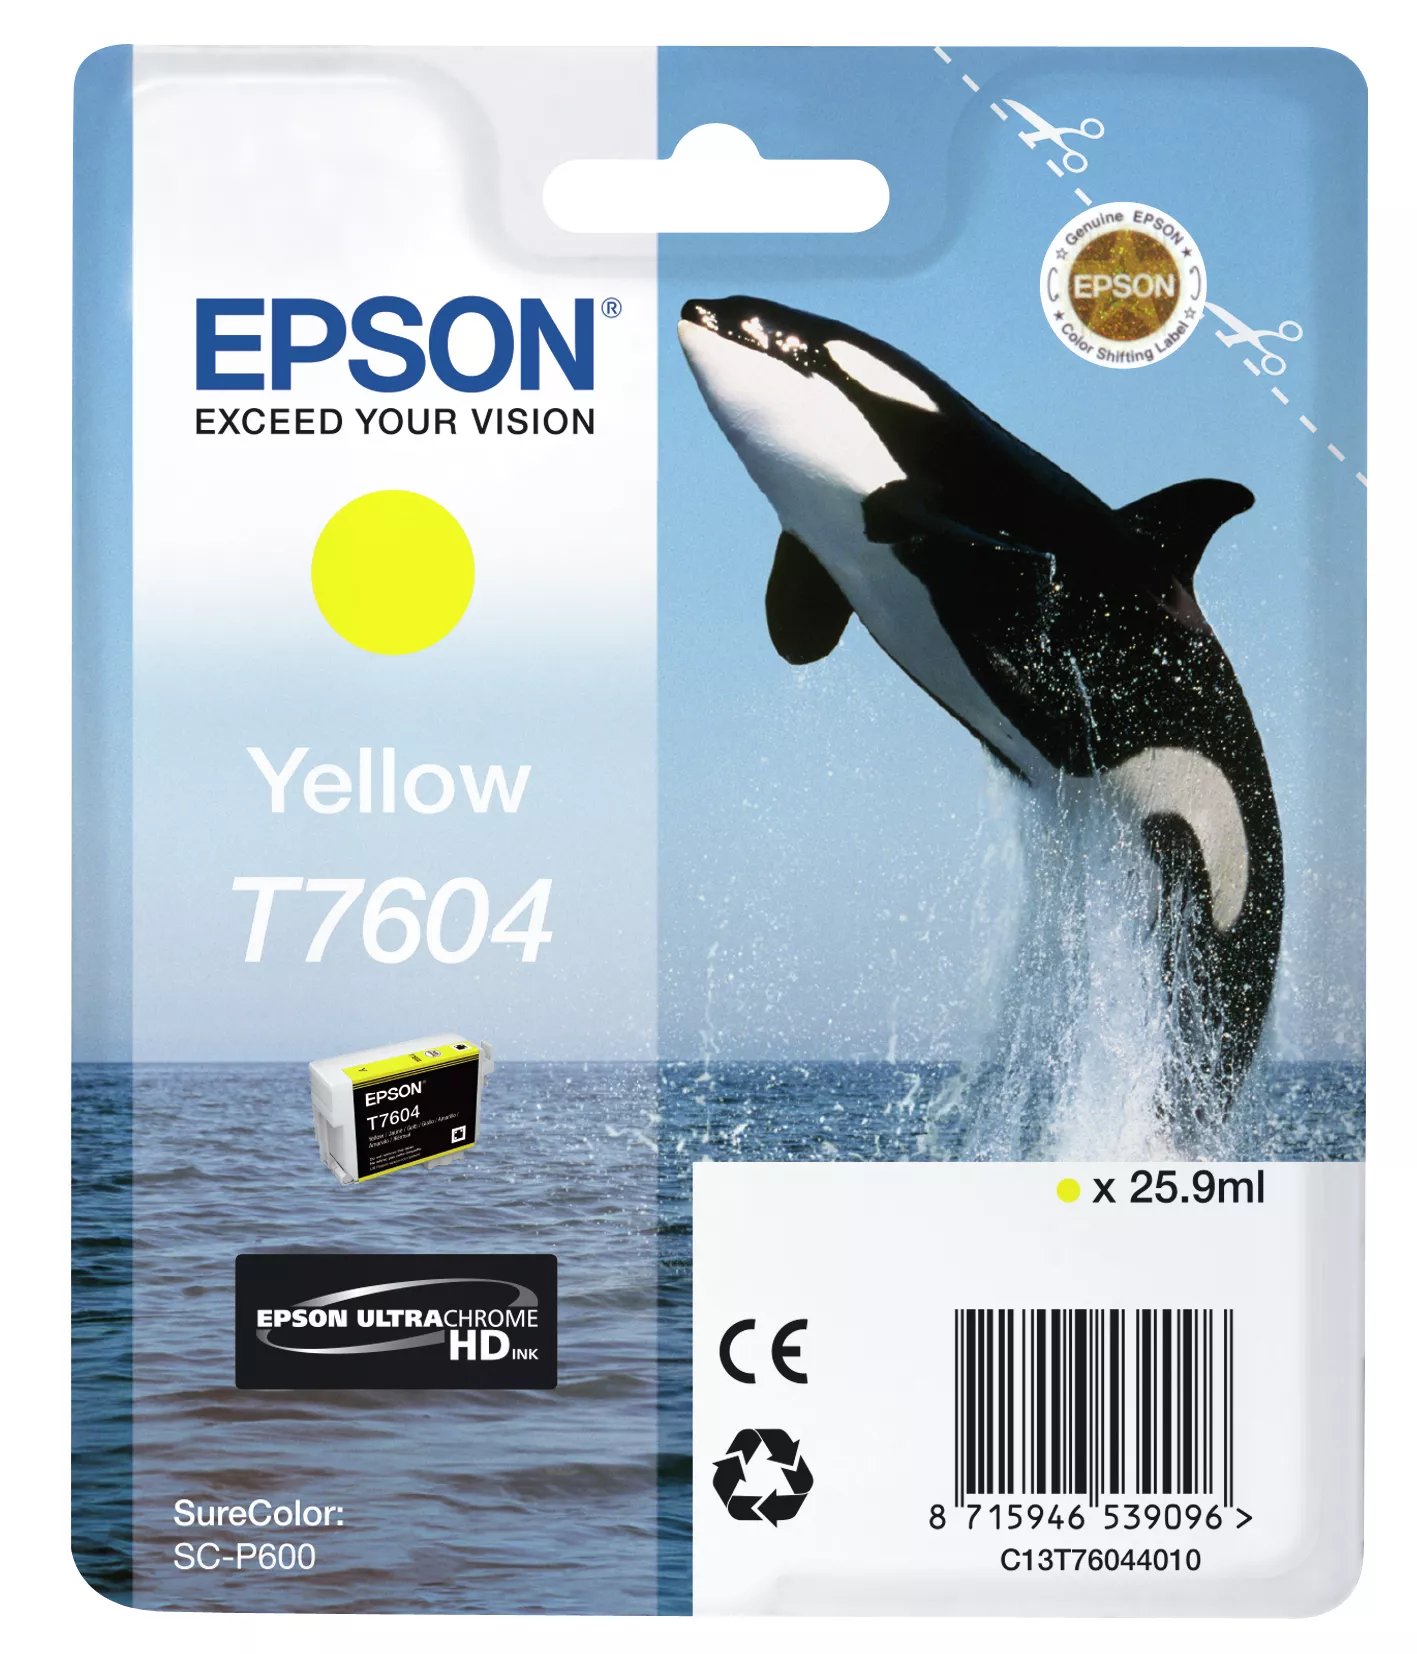 Revendeur officiel EPSON T7604 cartouche dencre jaune haute capacité 25,9ml